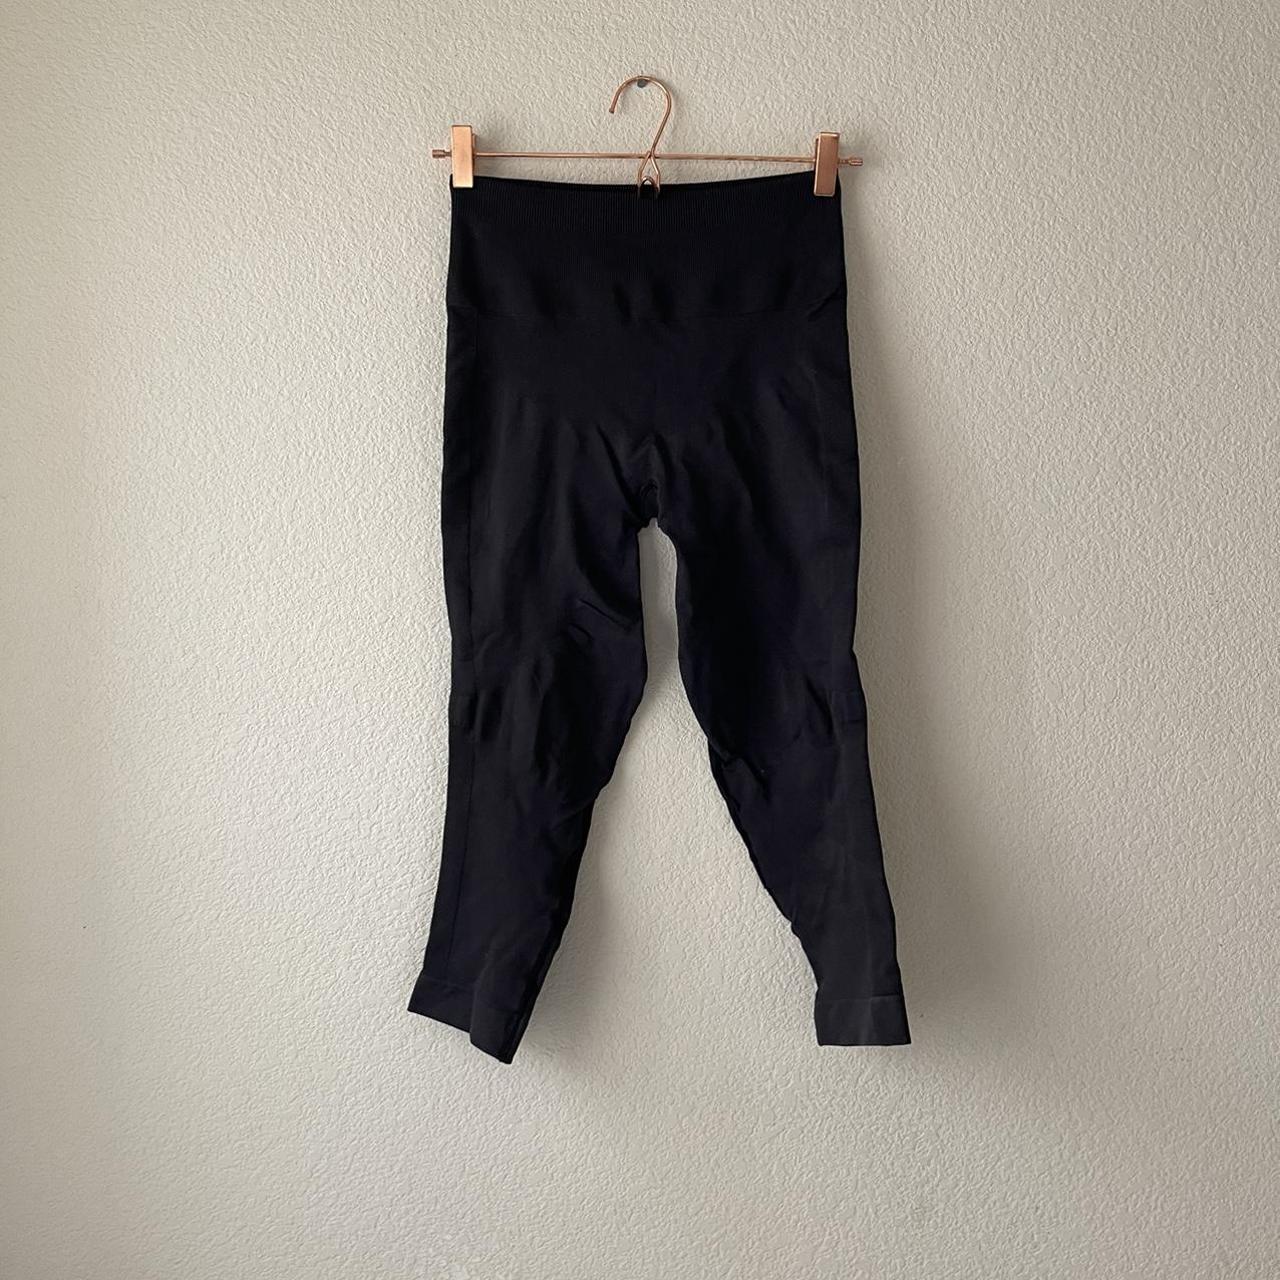 lululemon black cropped leggings. These are flawed - Depop